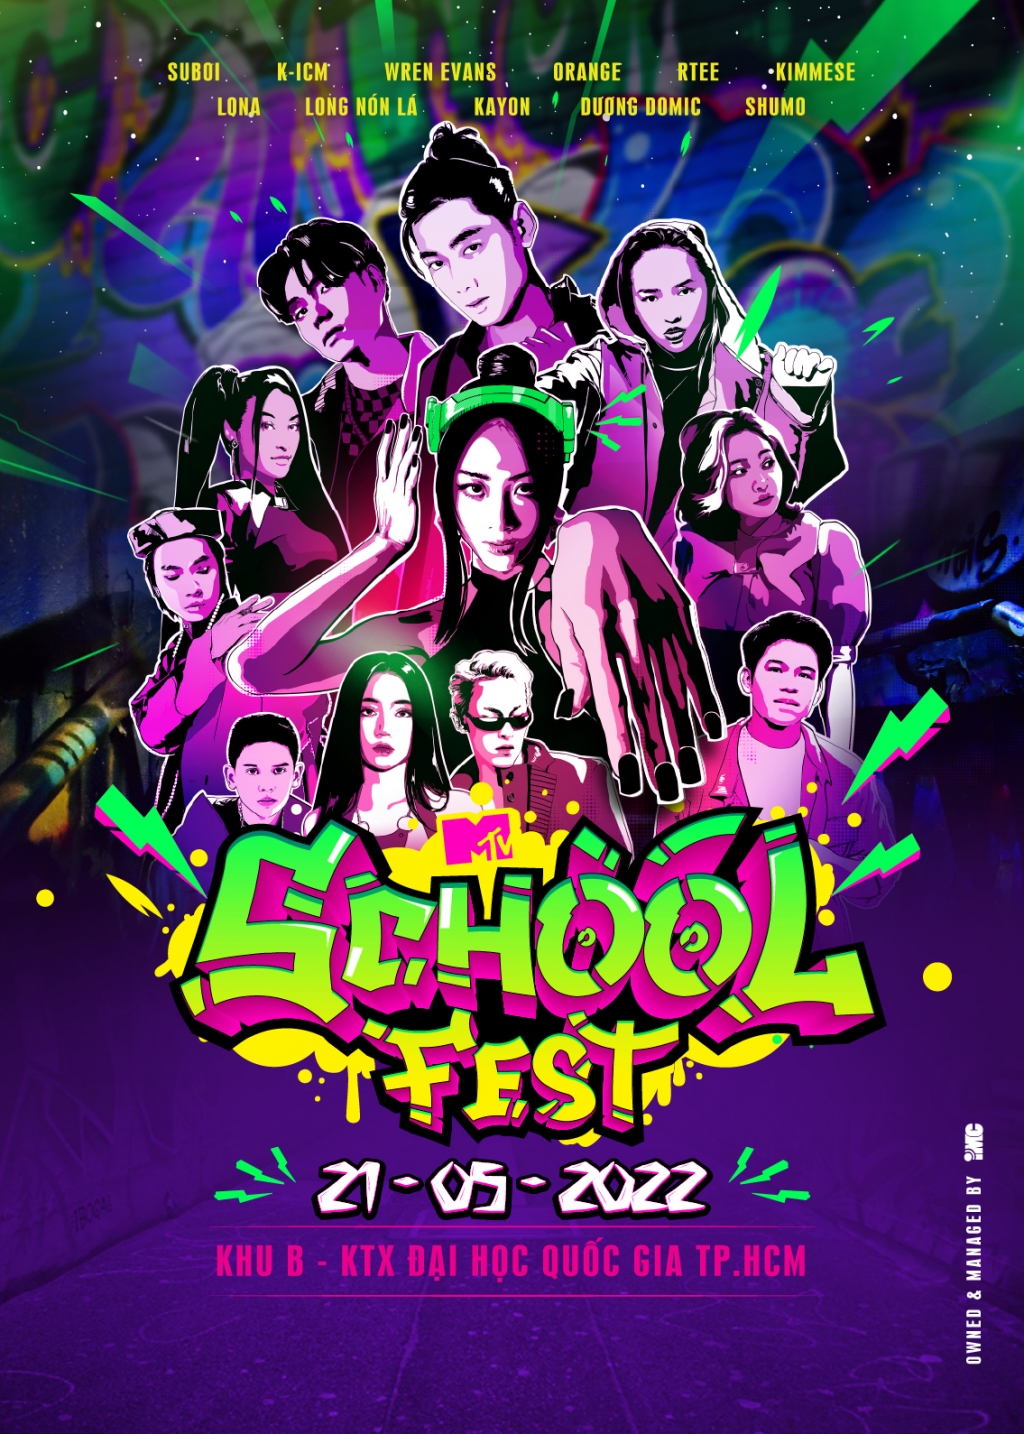 ‘Queen of Rap’ Suboi, Kimmese cùng loạt nghệ sĩ tên tuổi hội ngộ tại MTV School Fest tháng 5